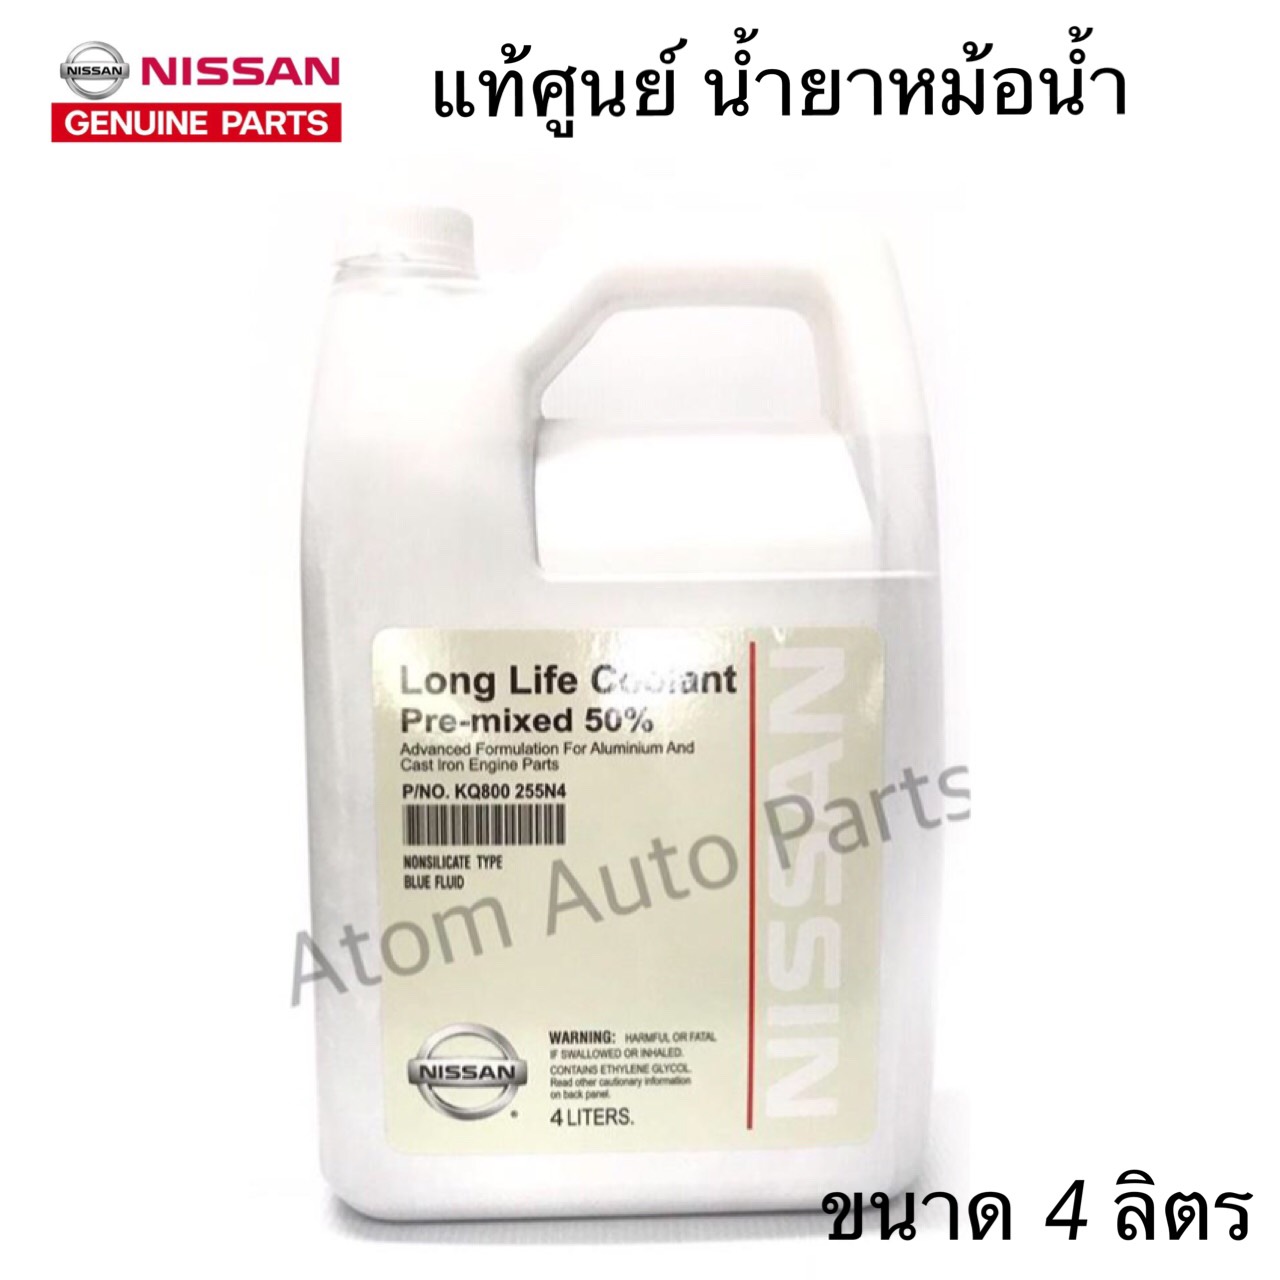 แท้ศูนย์ น้ำยาหม้อน้ำ NISSAN น้ำยาหล่อเย็น ขนาด 4ลิตร สำหรับรถ Nissan เก๋ง ,กระบะ ทุกรุ่น รหัส.KQ800 255N4